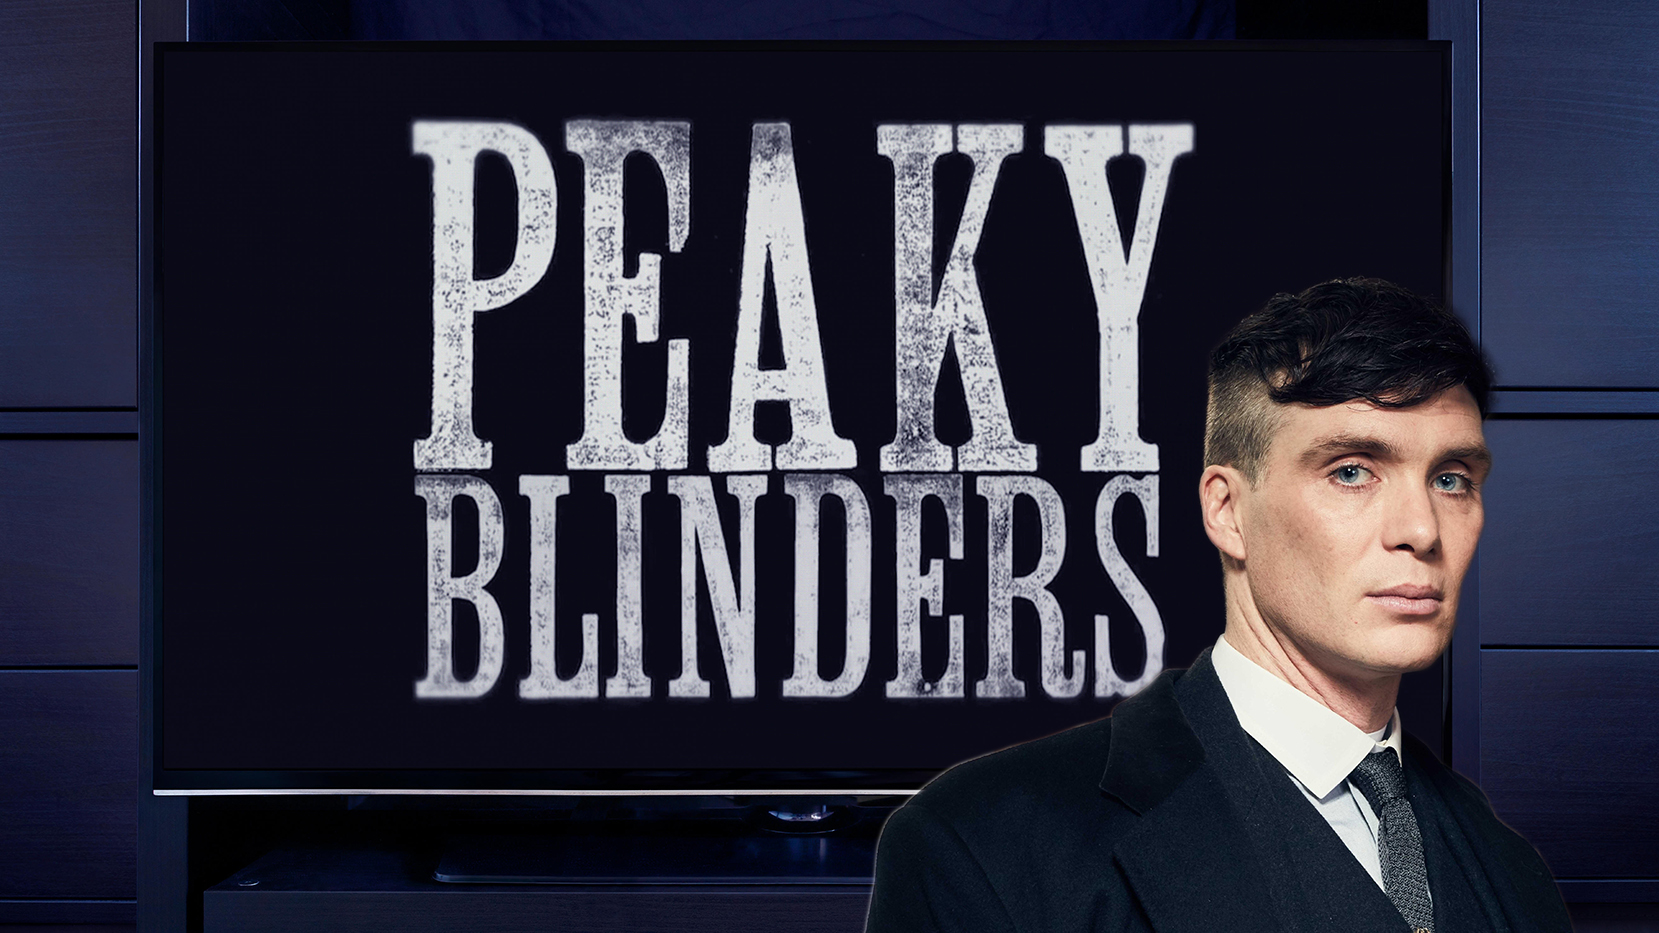 Peaky Blinders Movie: What We Know So Far